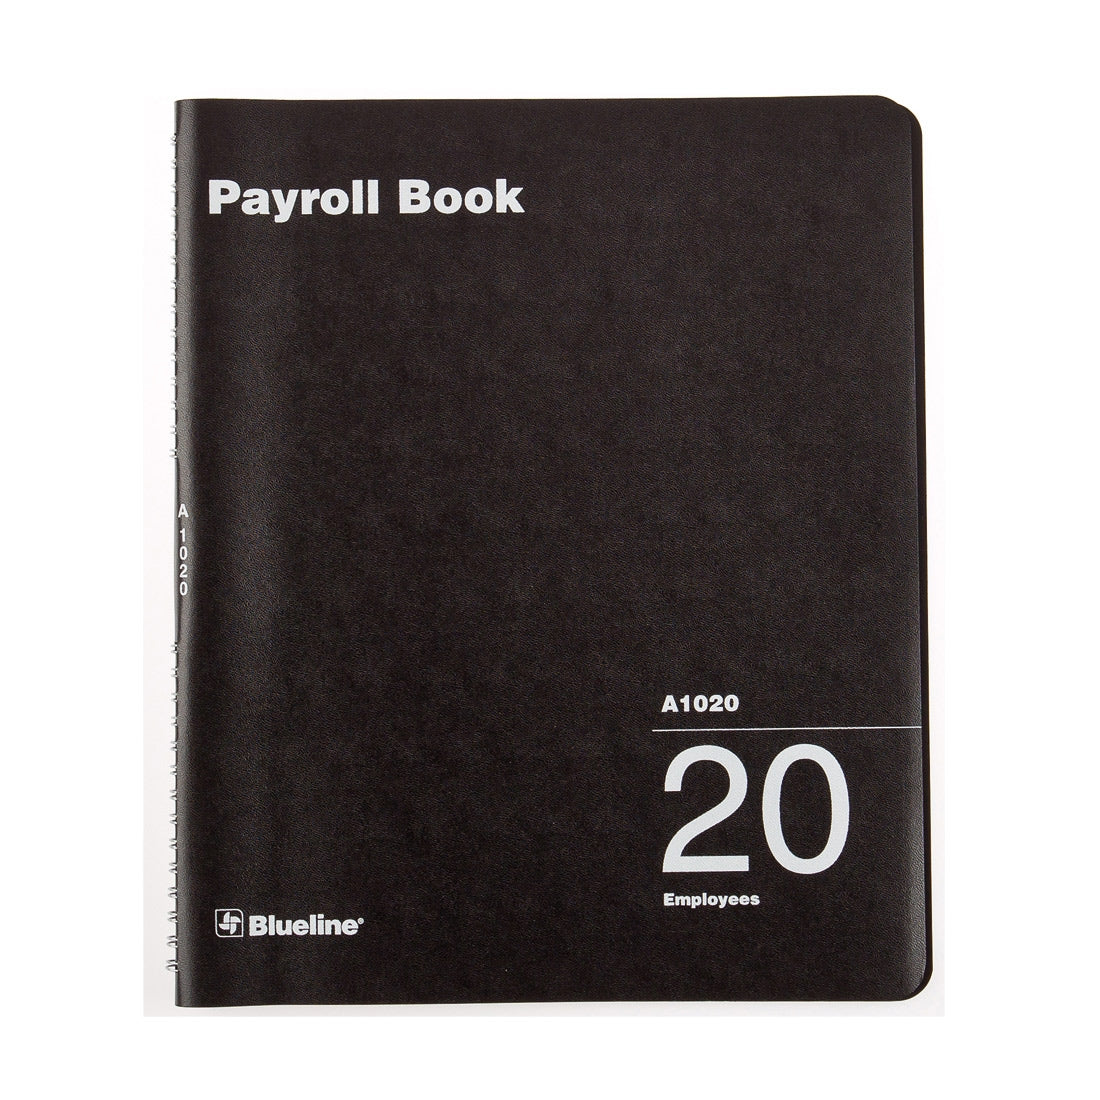 Payroll Book, 20 Employees, A1020